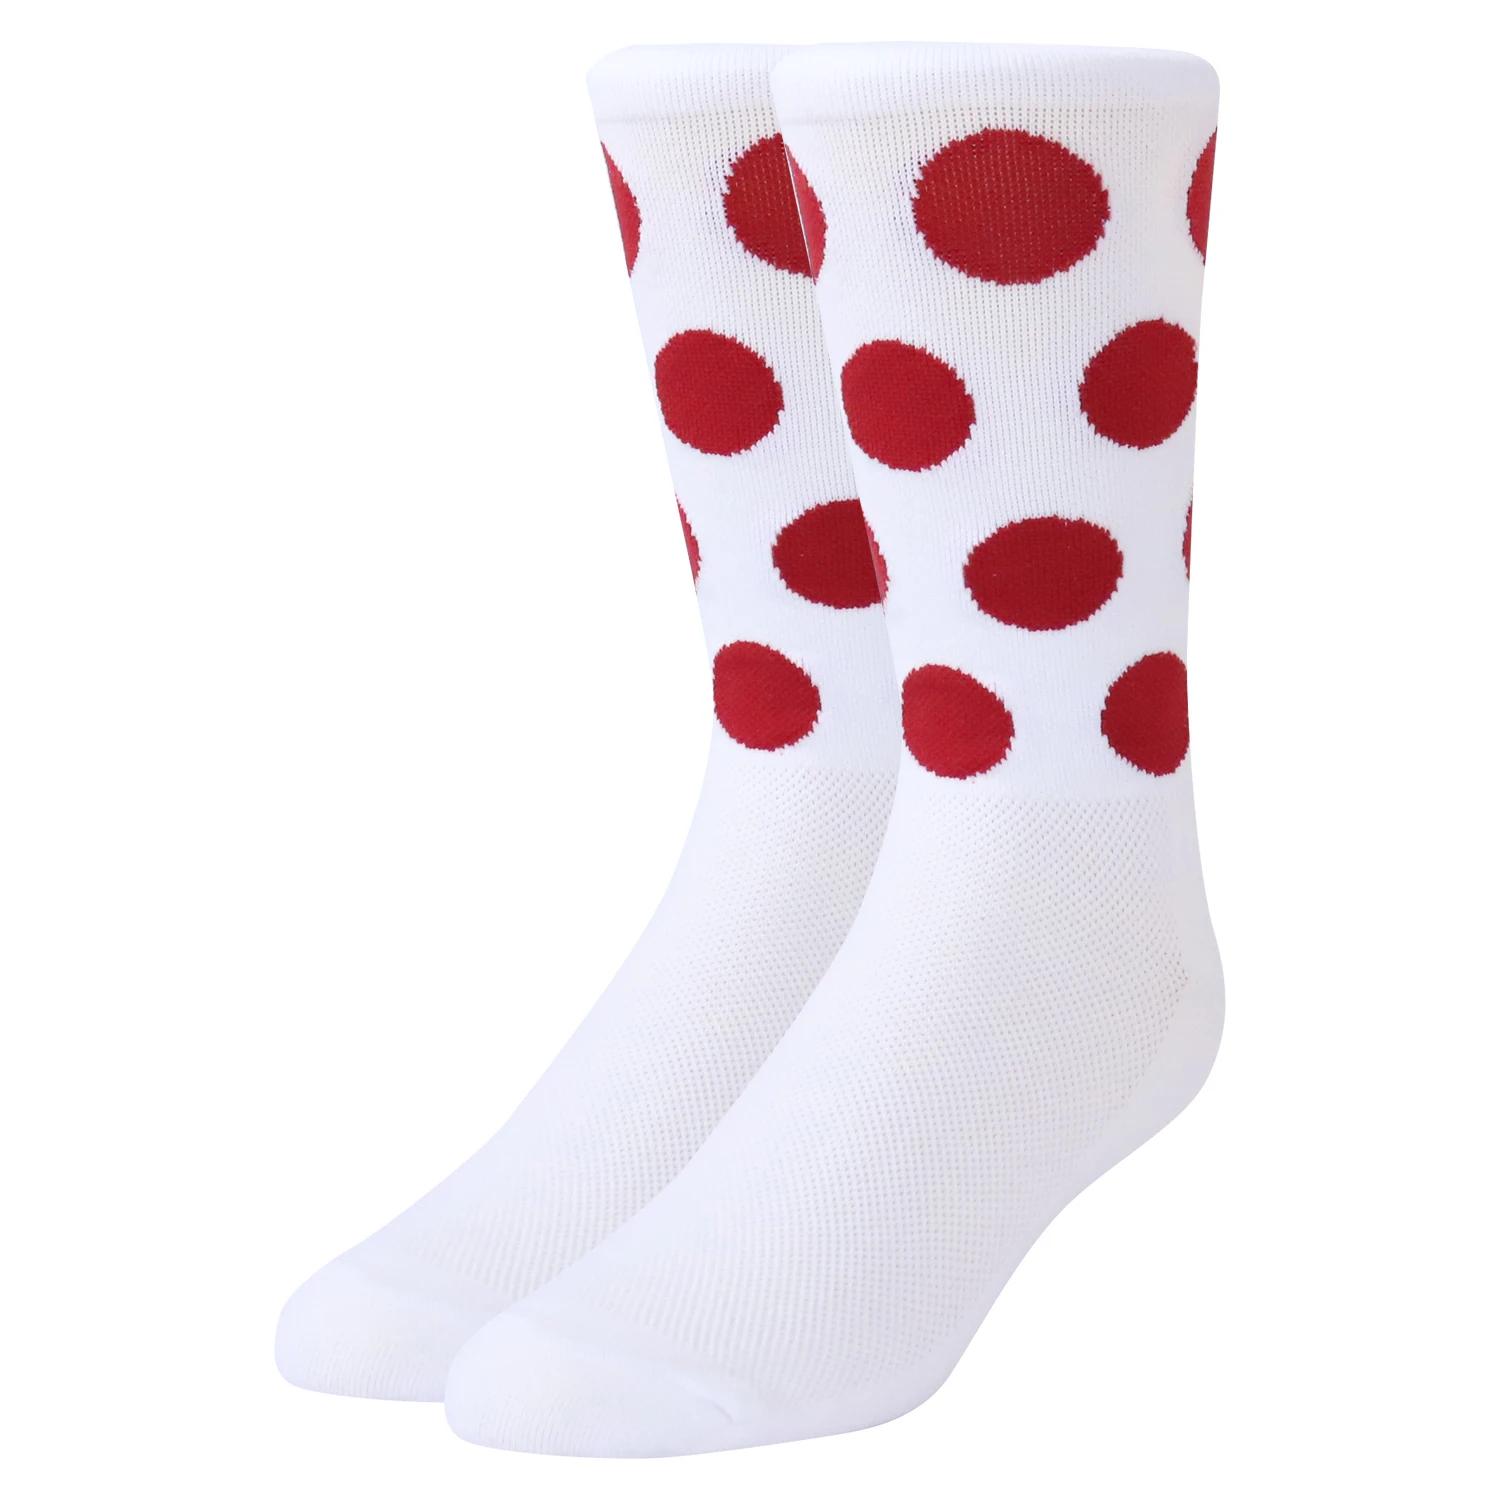 HIgh Quality designer bike socks with logo oem sport running breathable nylon coolmax men cycling Logo socks custom